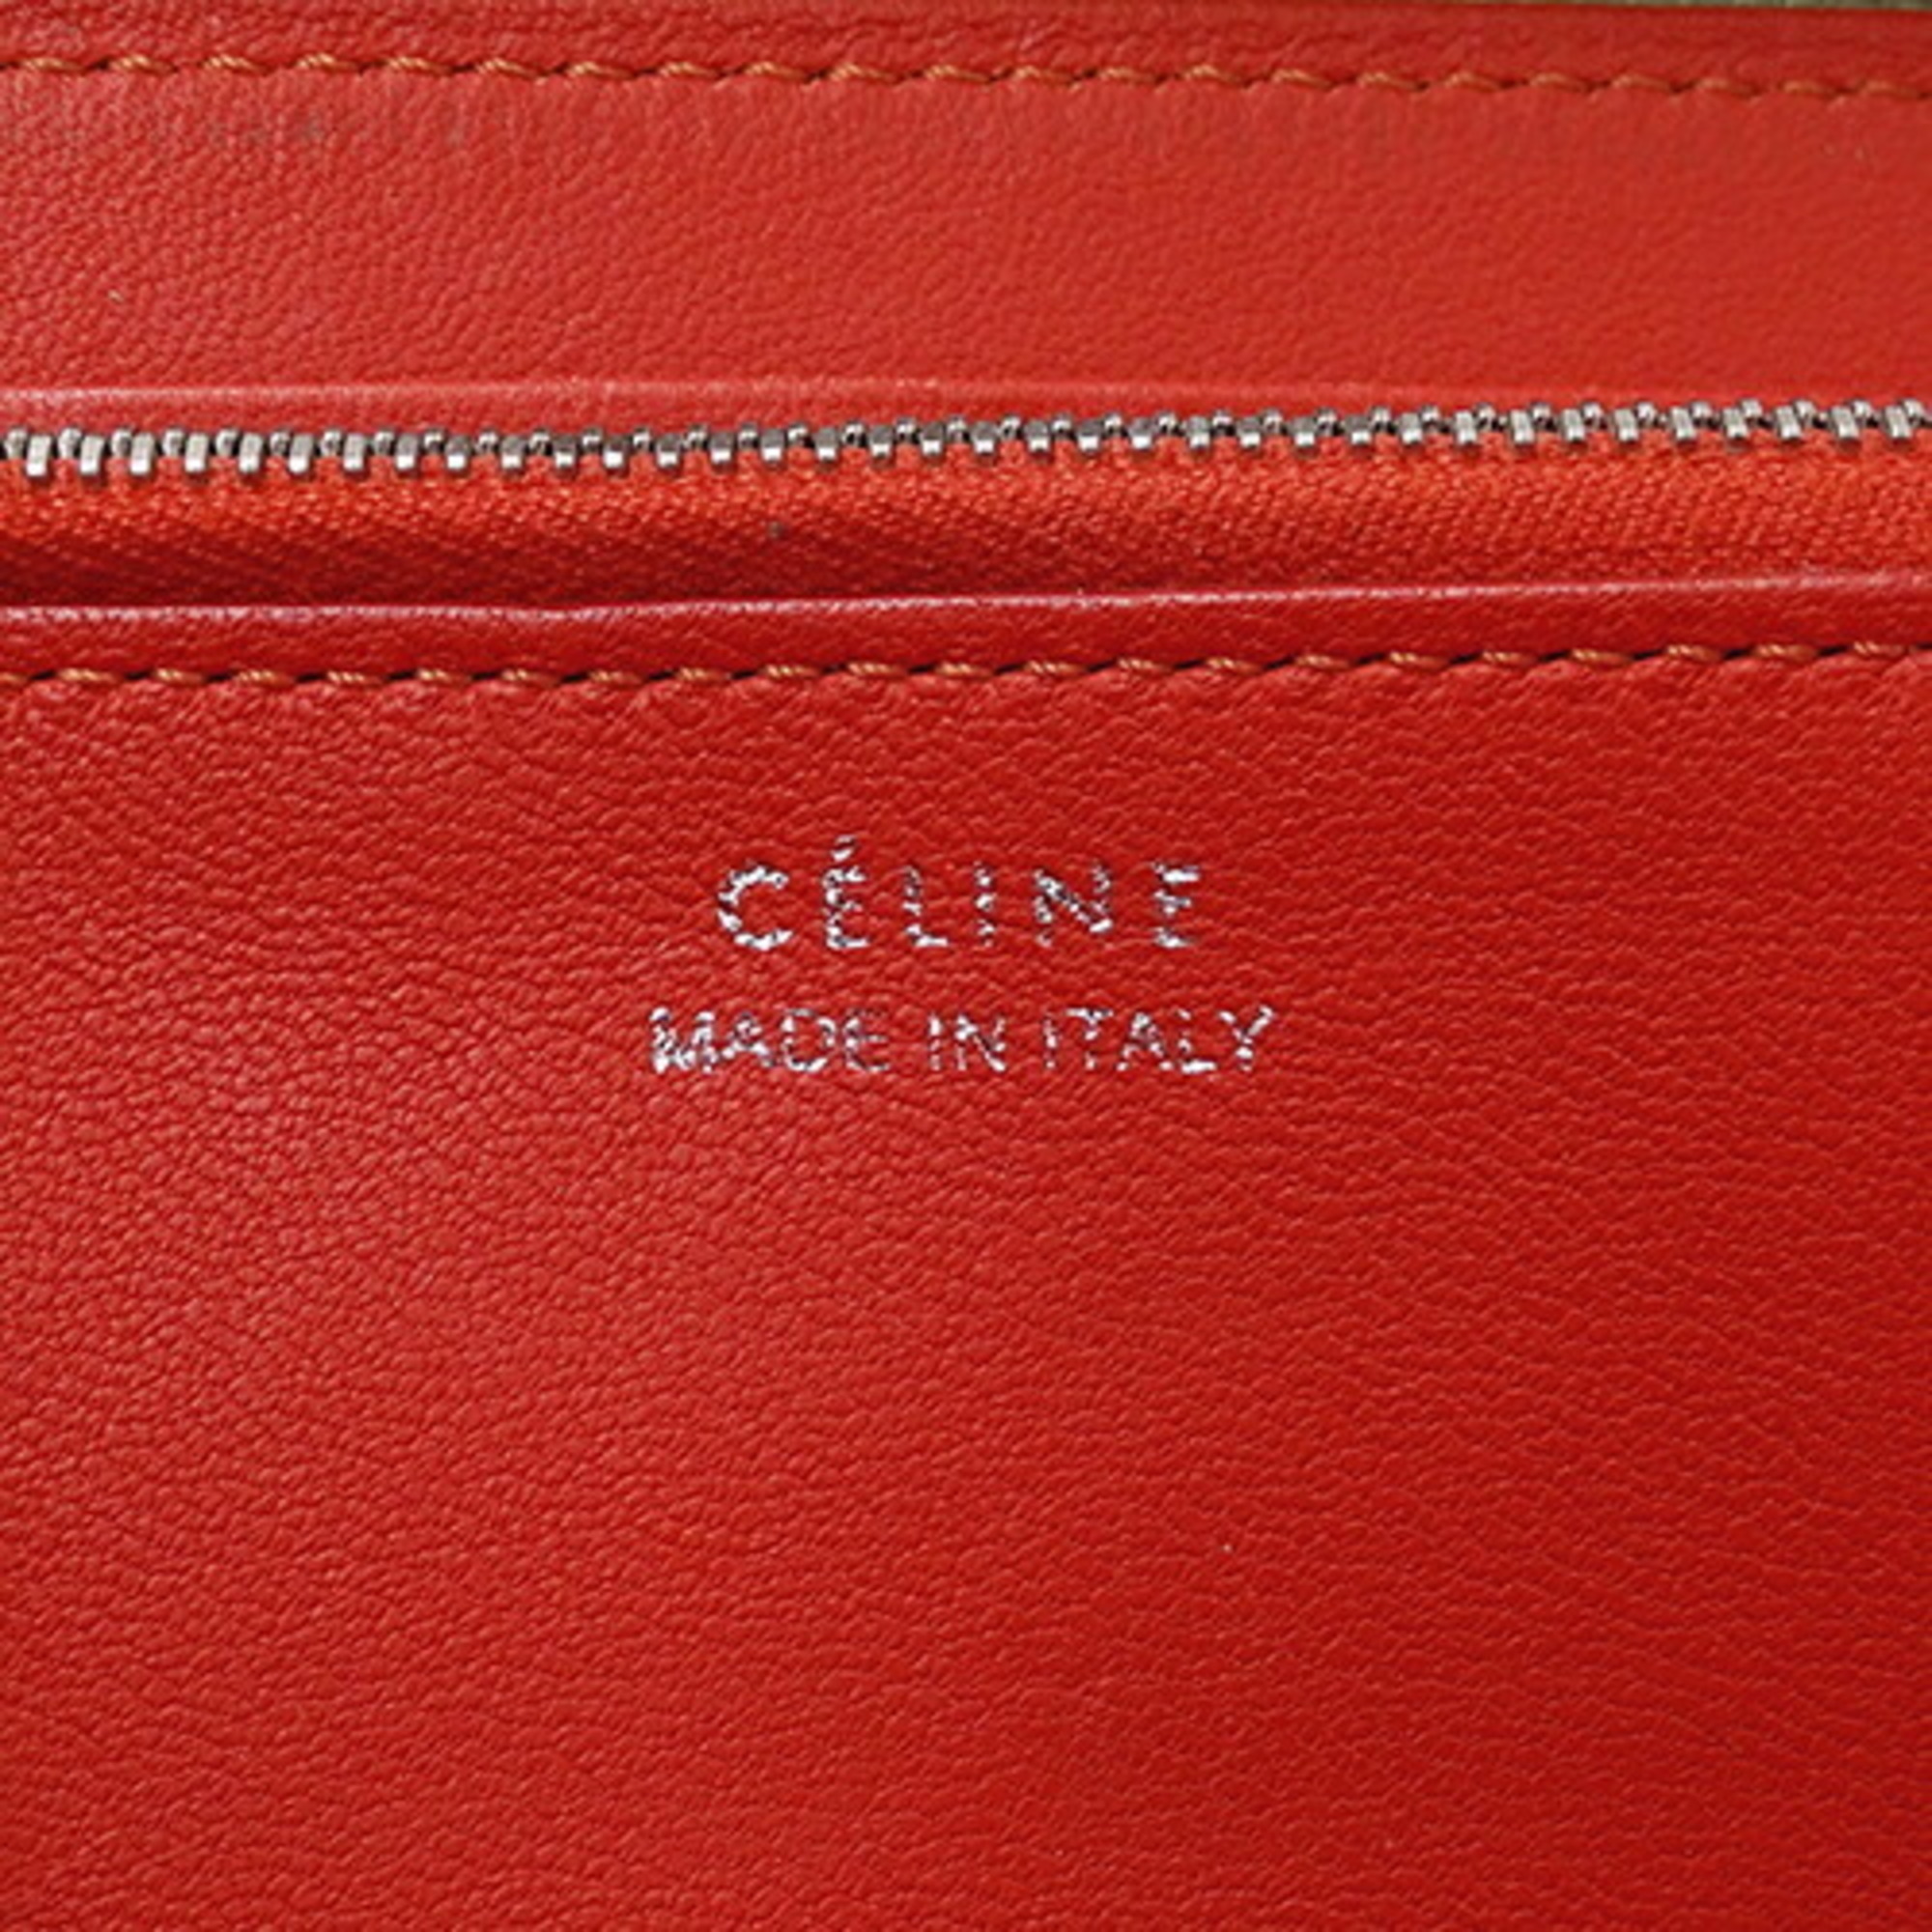 CELINE Wallet Women's Brand Long Leather Large Zip Multifunction Beige Round Zipper